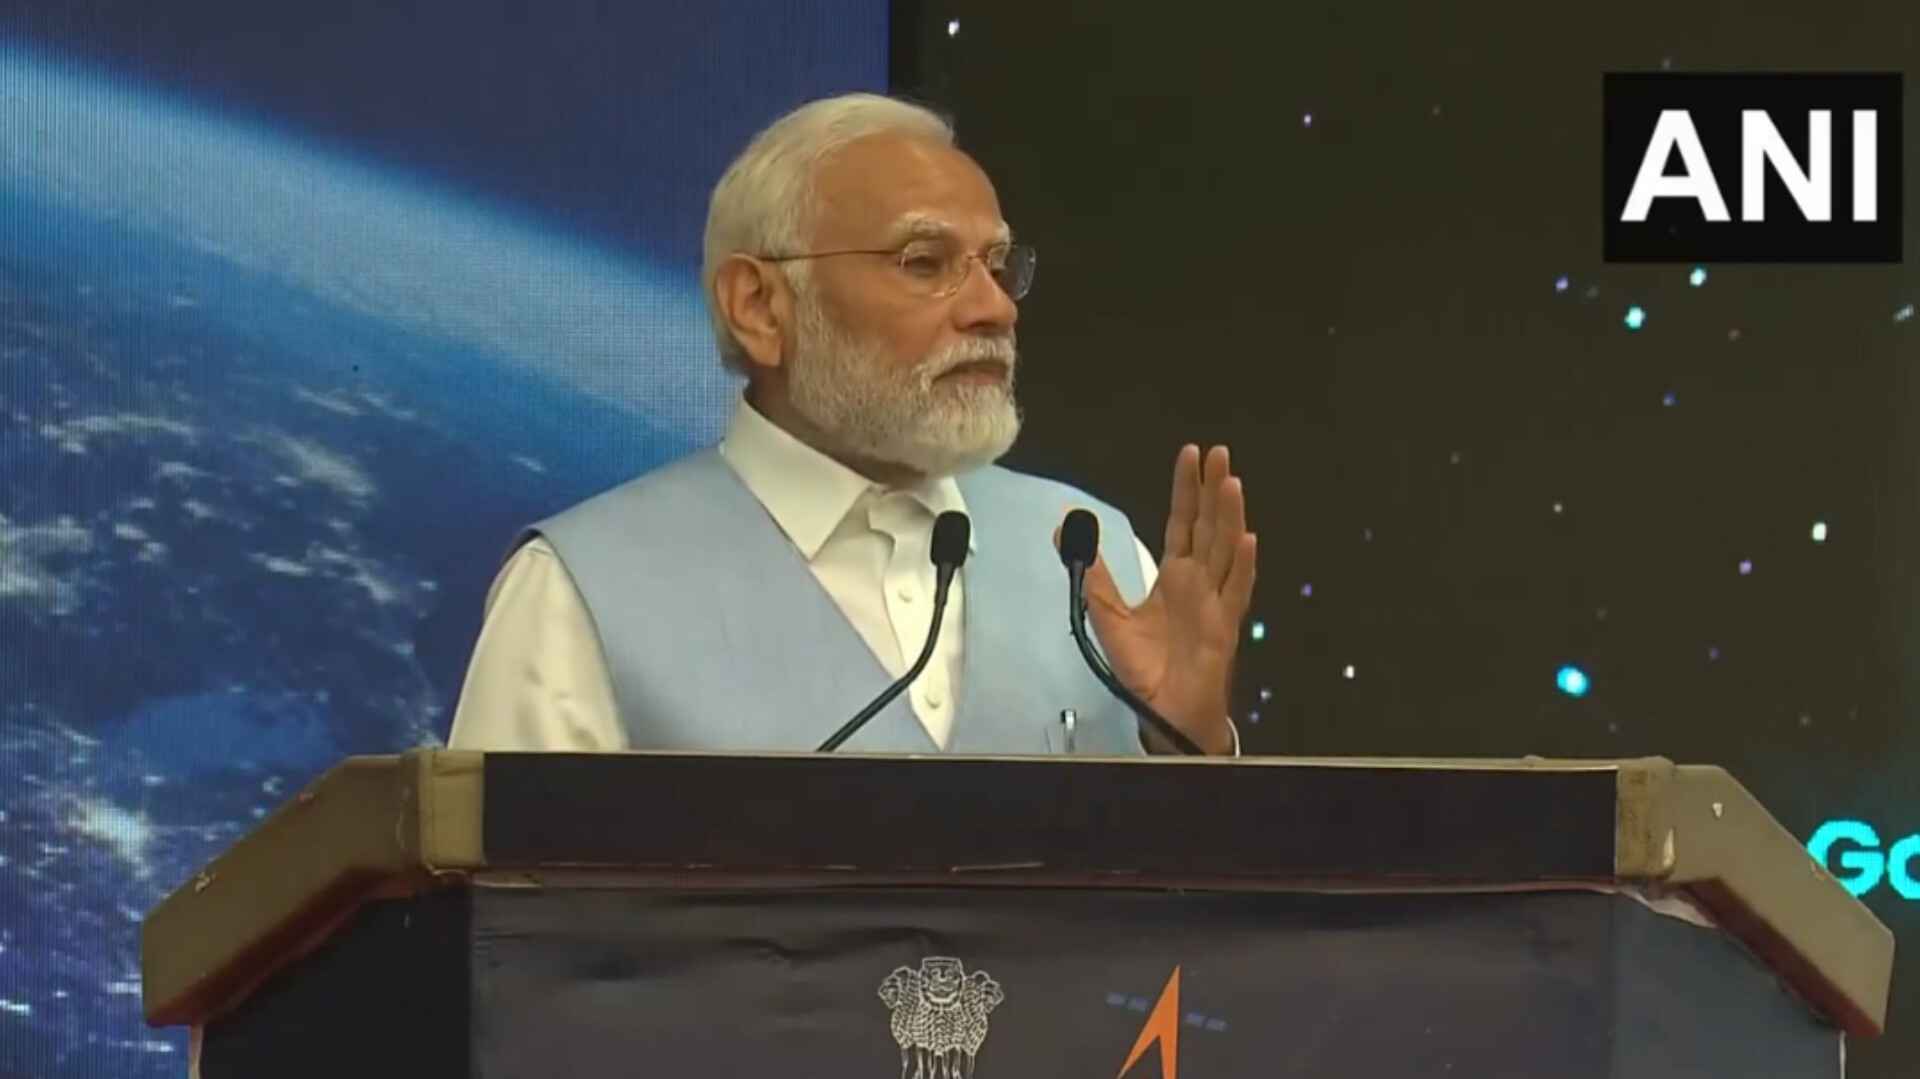 '2035 तक अंतरिक्ष में भारत का अपना स्पेस सेंटर होगा': विक्रम साराभाई अंतरिक्ष केंद्र में पीएम मोदी